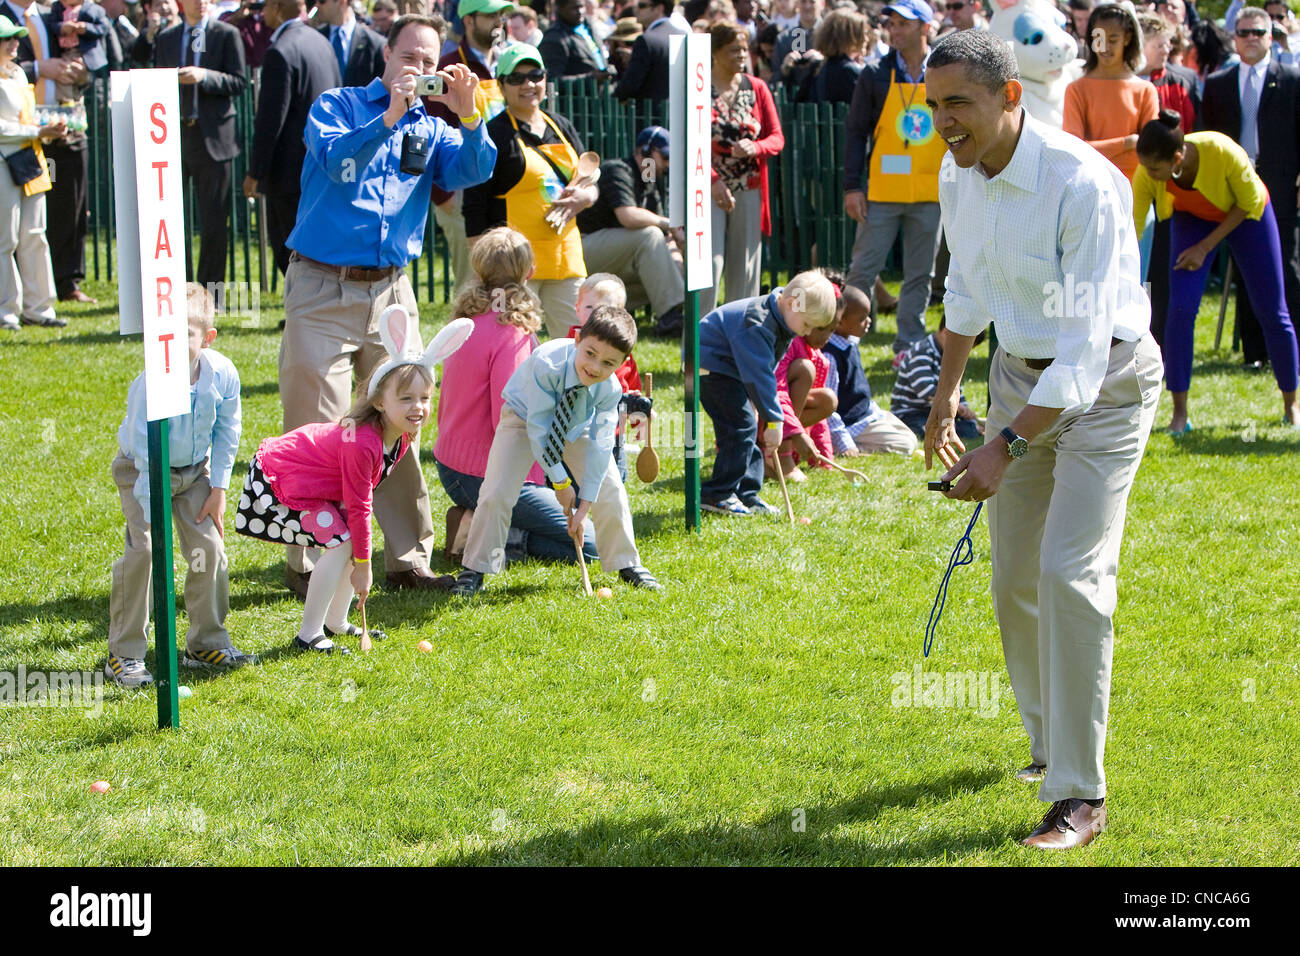 President Barack Obama at the 2012 White House Easter Egg Roll. Stock Photo